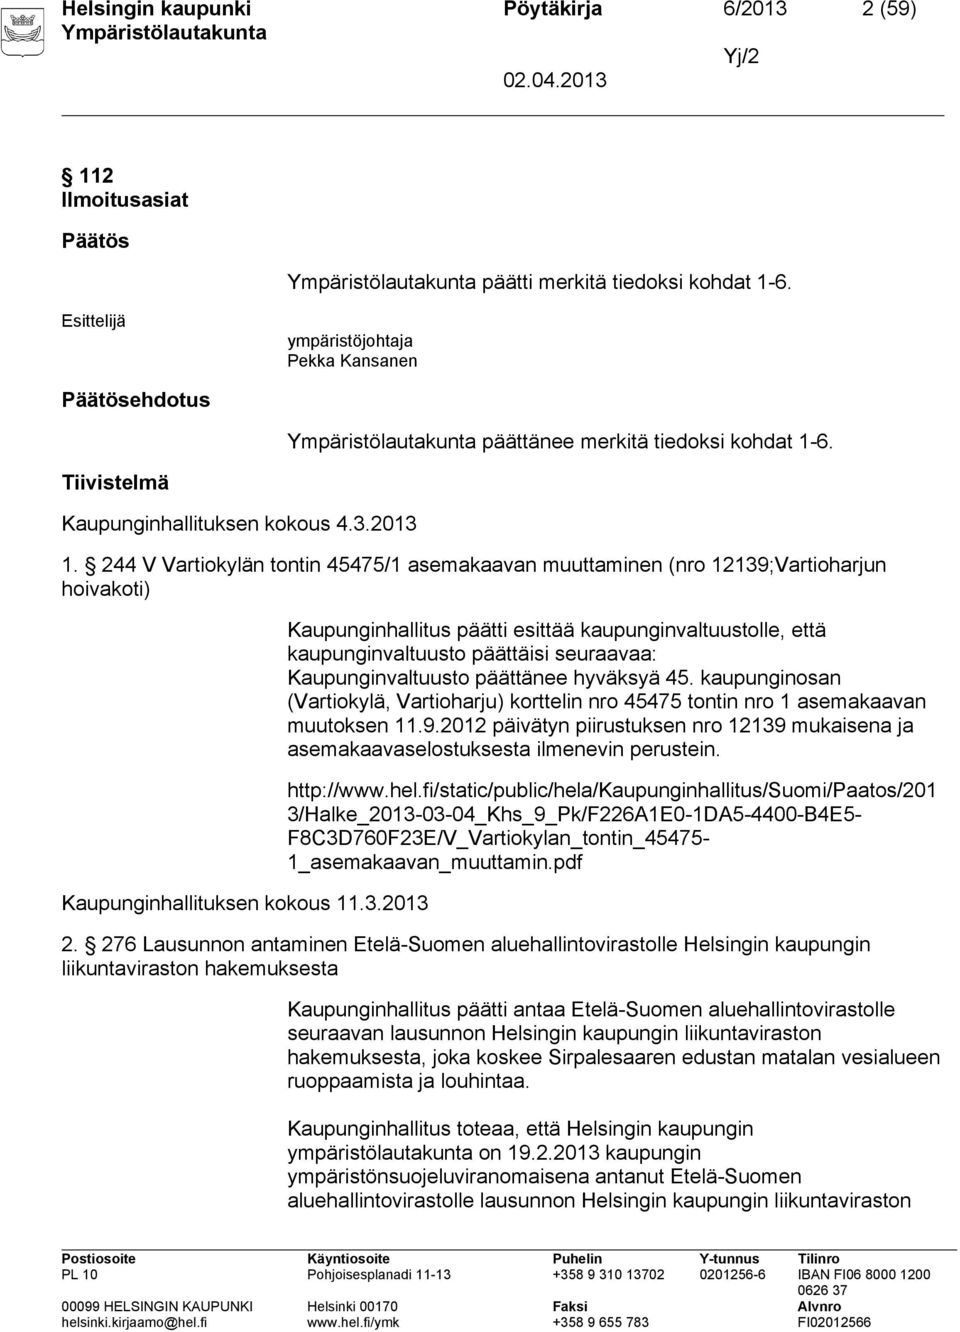 kaupunginosan (Vartiokylä, Vartioharju) korttelin nro 45475 tontin nro 1 asemakaavan muutoksen 11.9.2012 päivätyn piirustuksen nro 12139 mukaisena ja asemakaavaselostuksesta ilmenevin perustein.